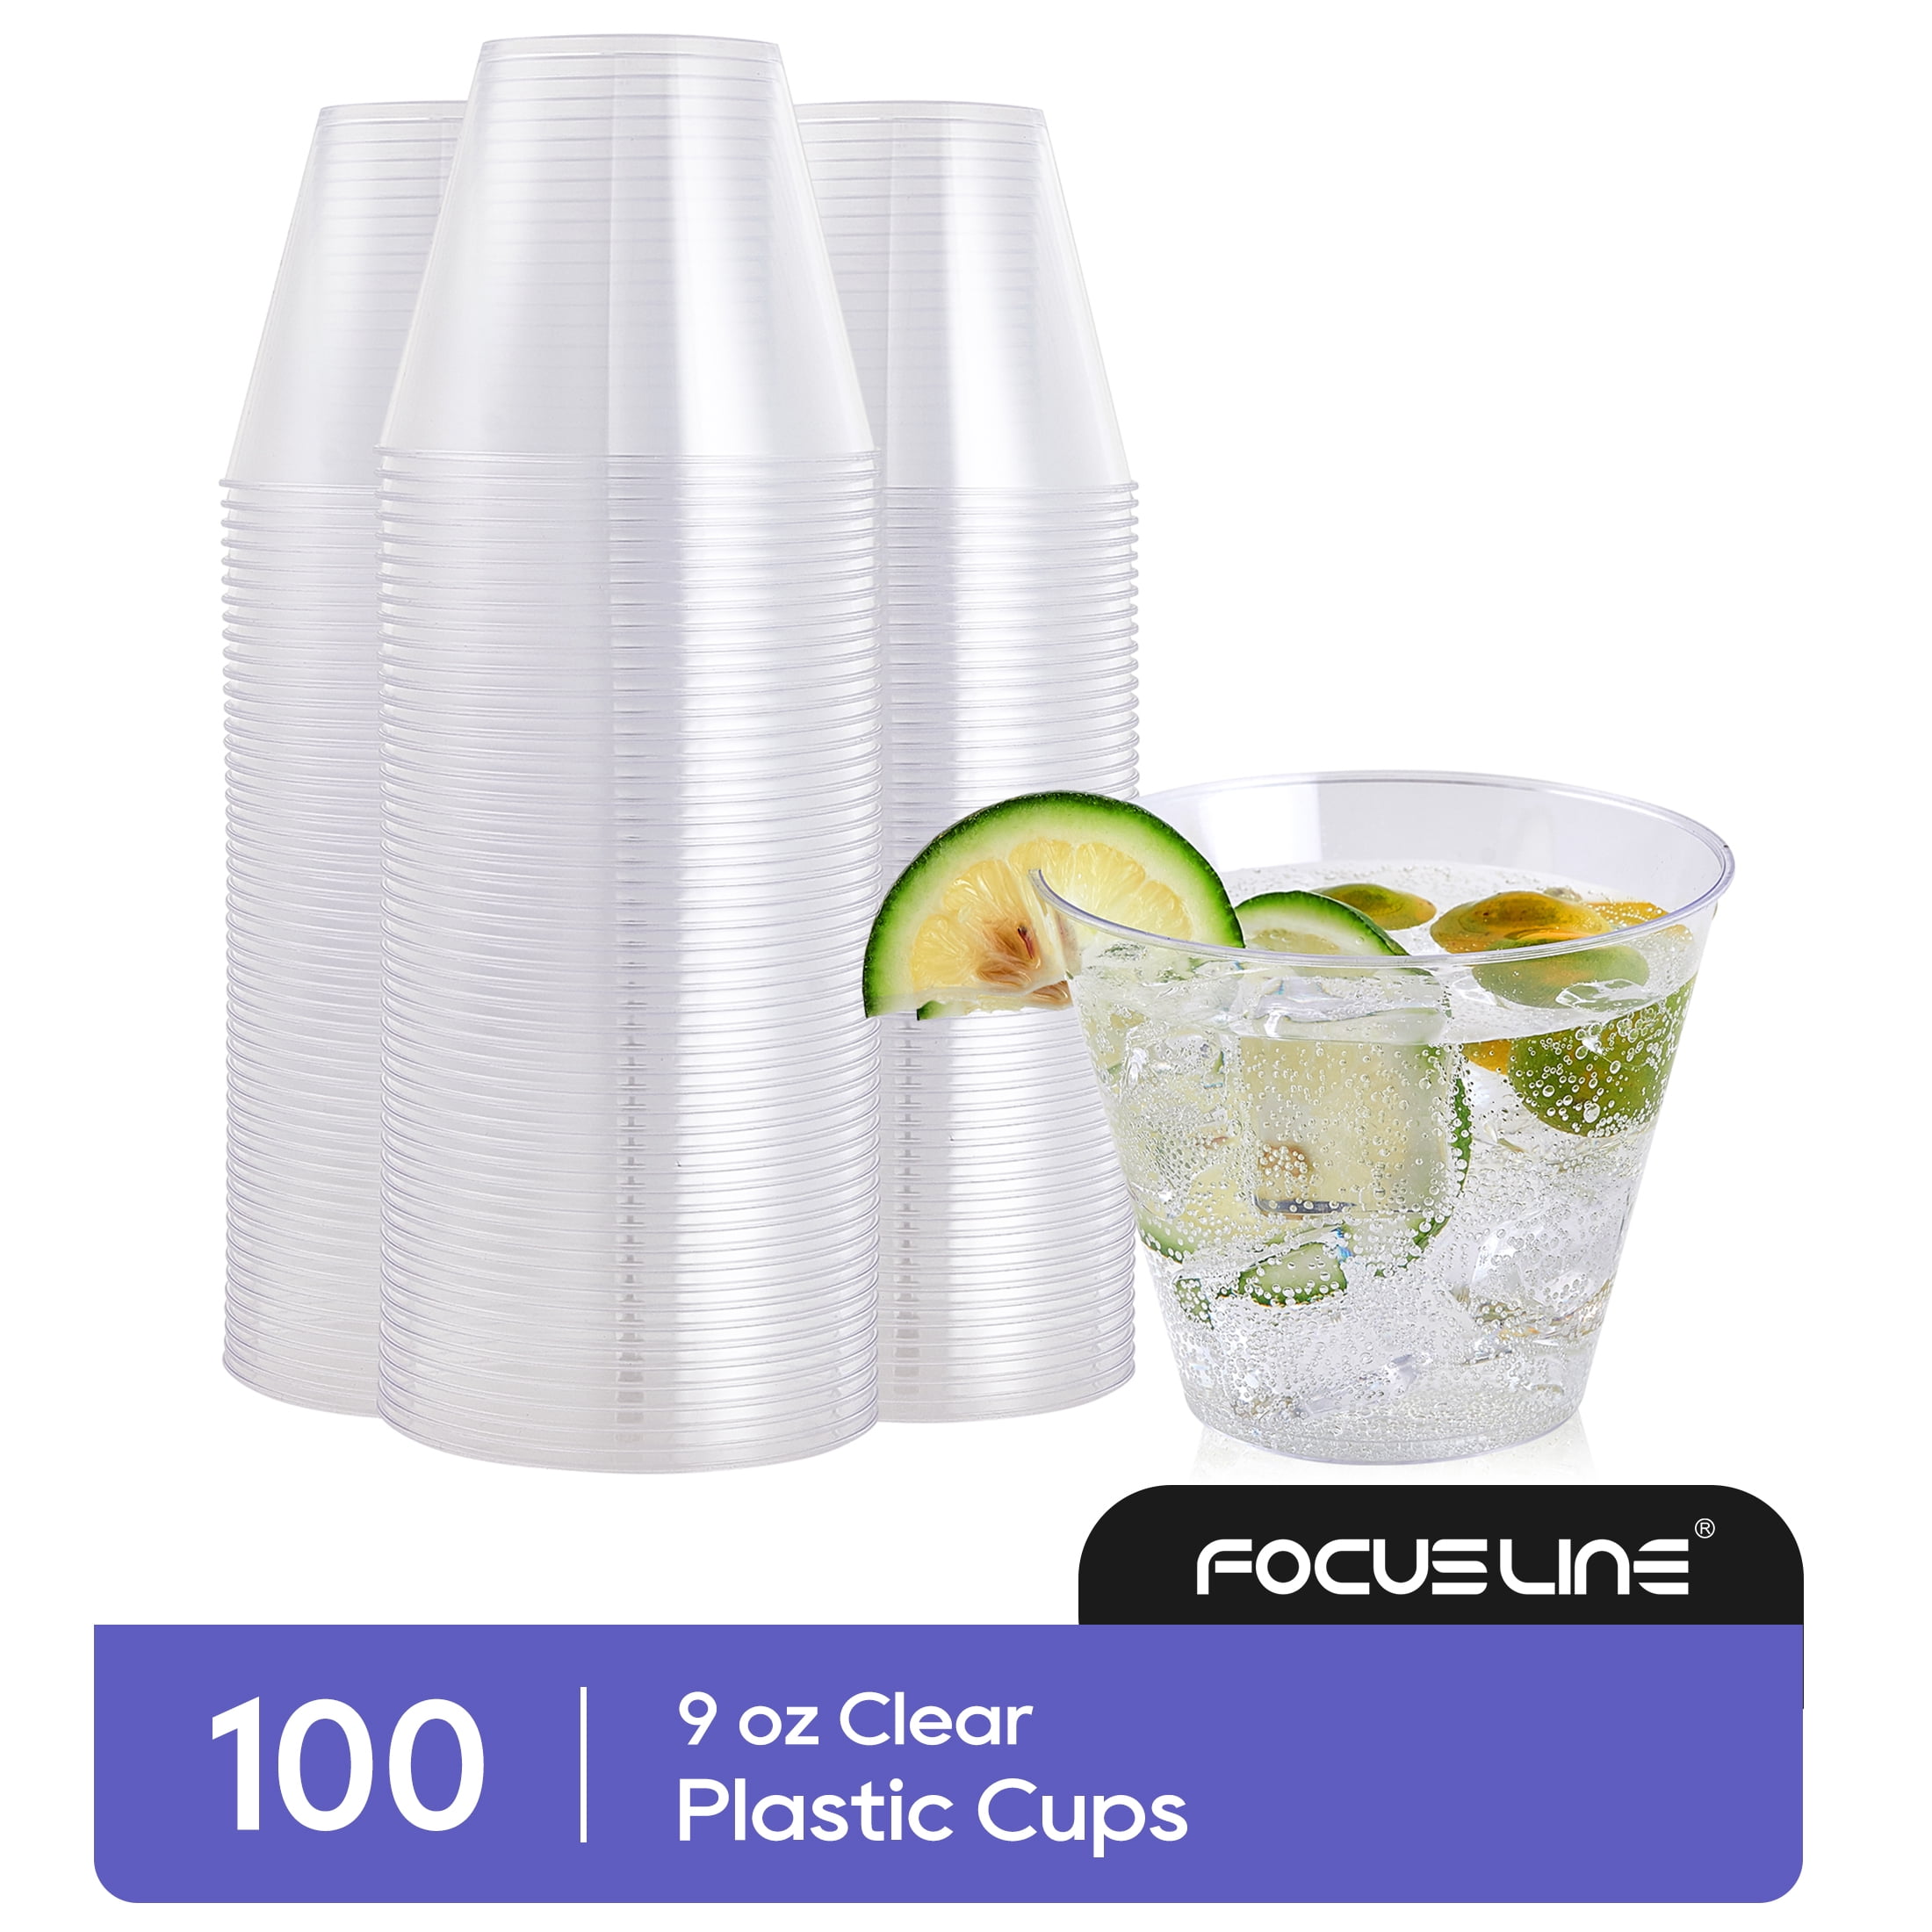 Exquisite Orange Heavy Duty Disposable Plastic Cups, Bulk Party Pack, 12 oz  - 100 Count 